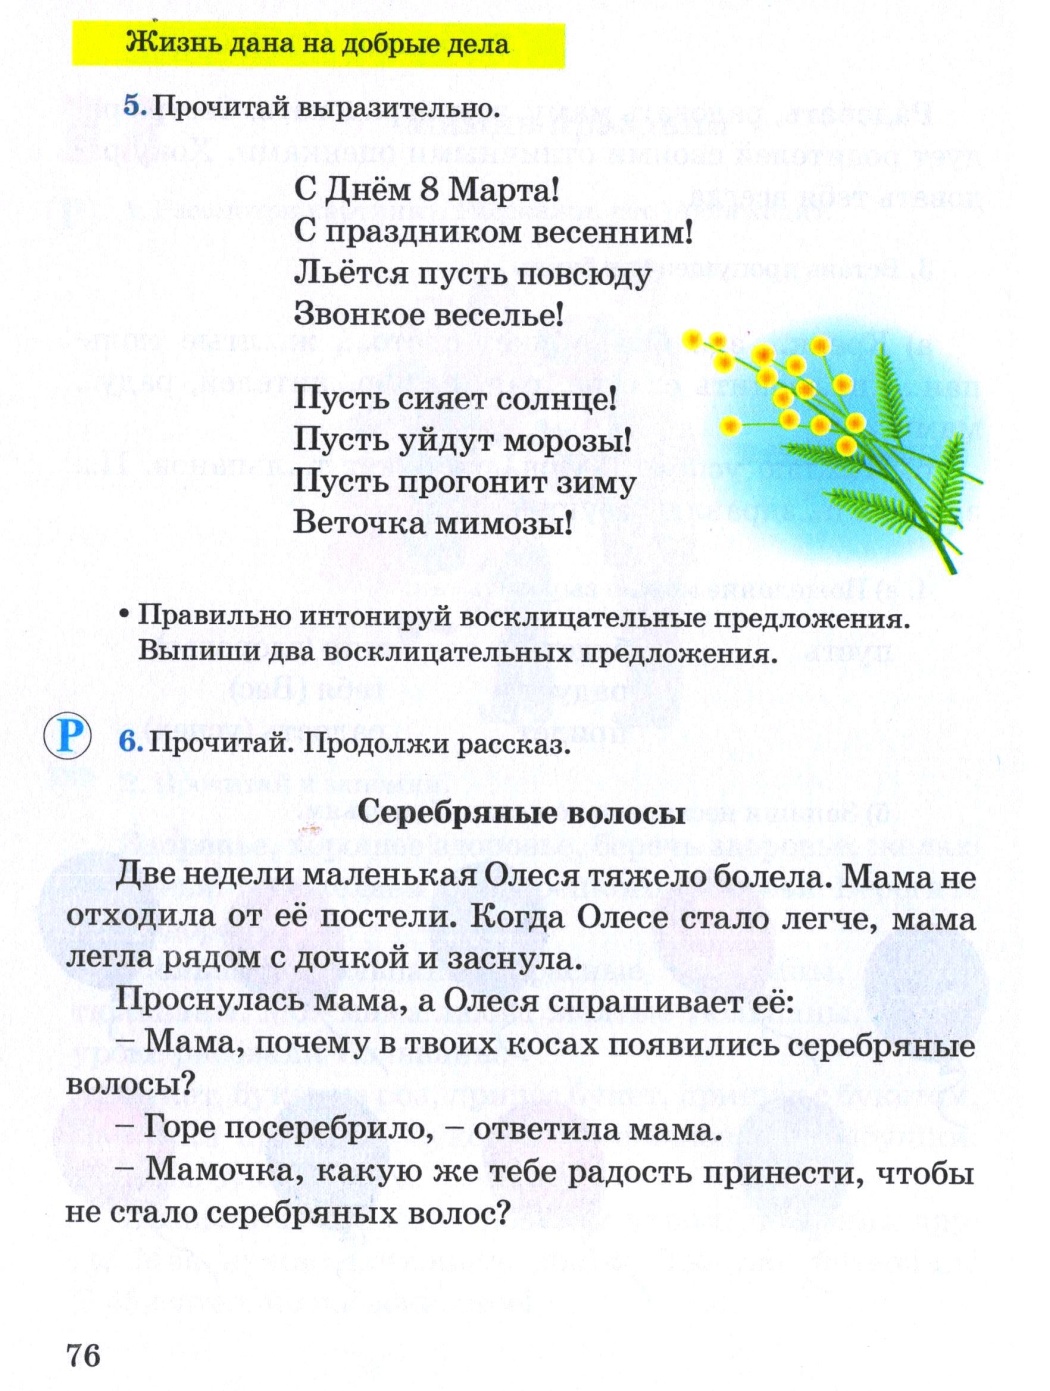 Поурочное планирование по русскому языку 4 класс 3 четверть 20 уроков